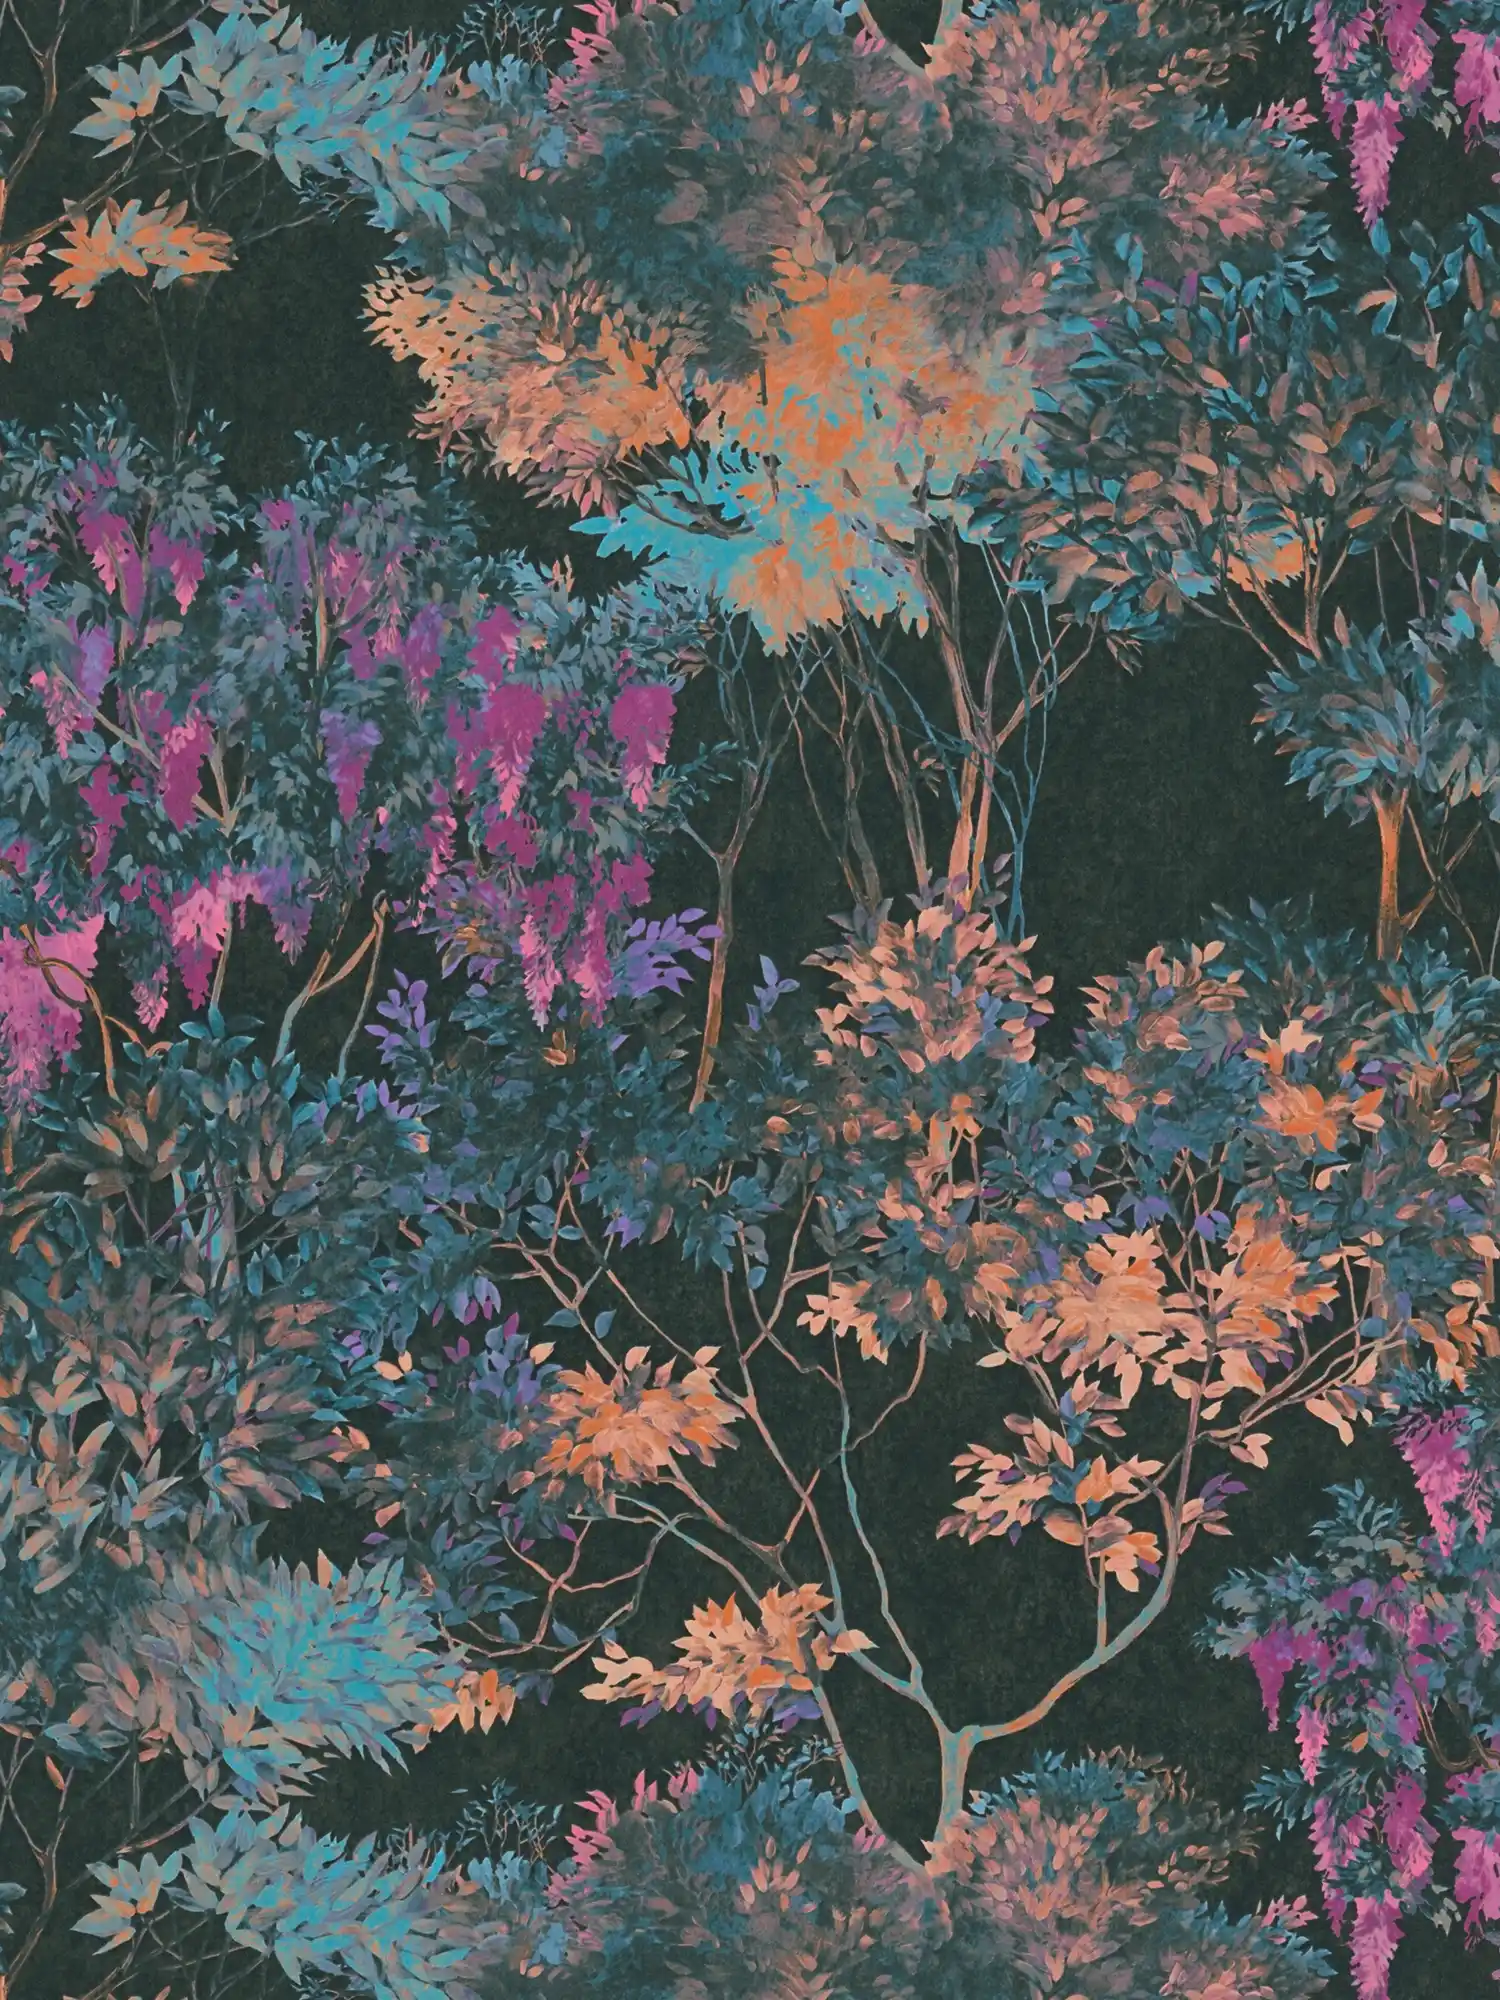 Dschungeltapete mit bunten Muster – Bunt, Schwarz, Blau
